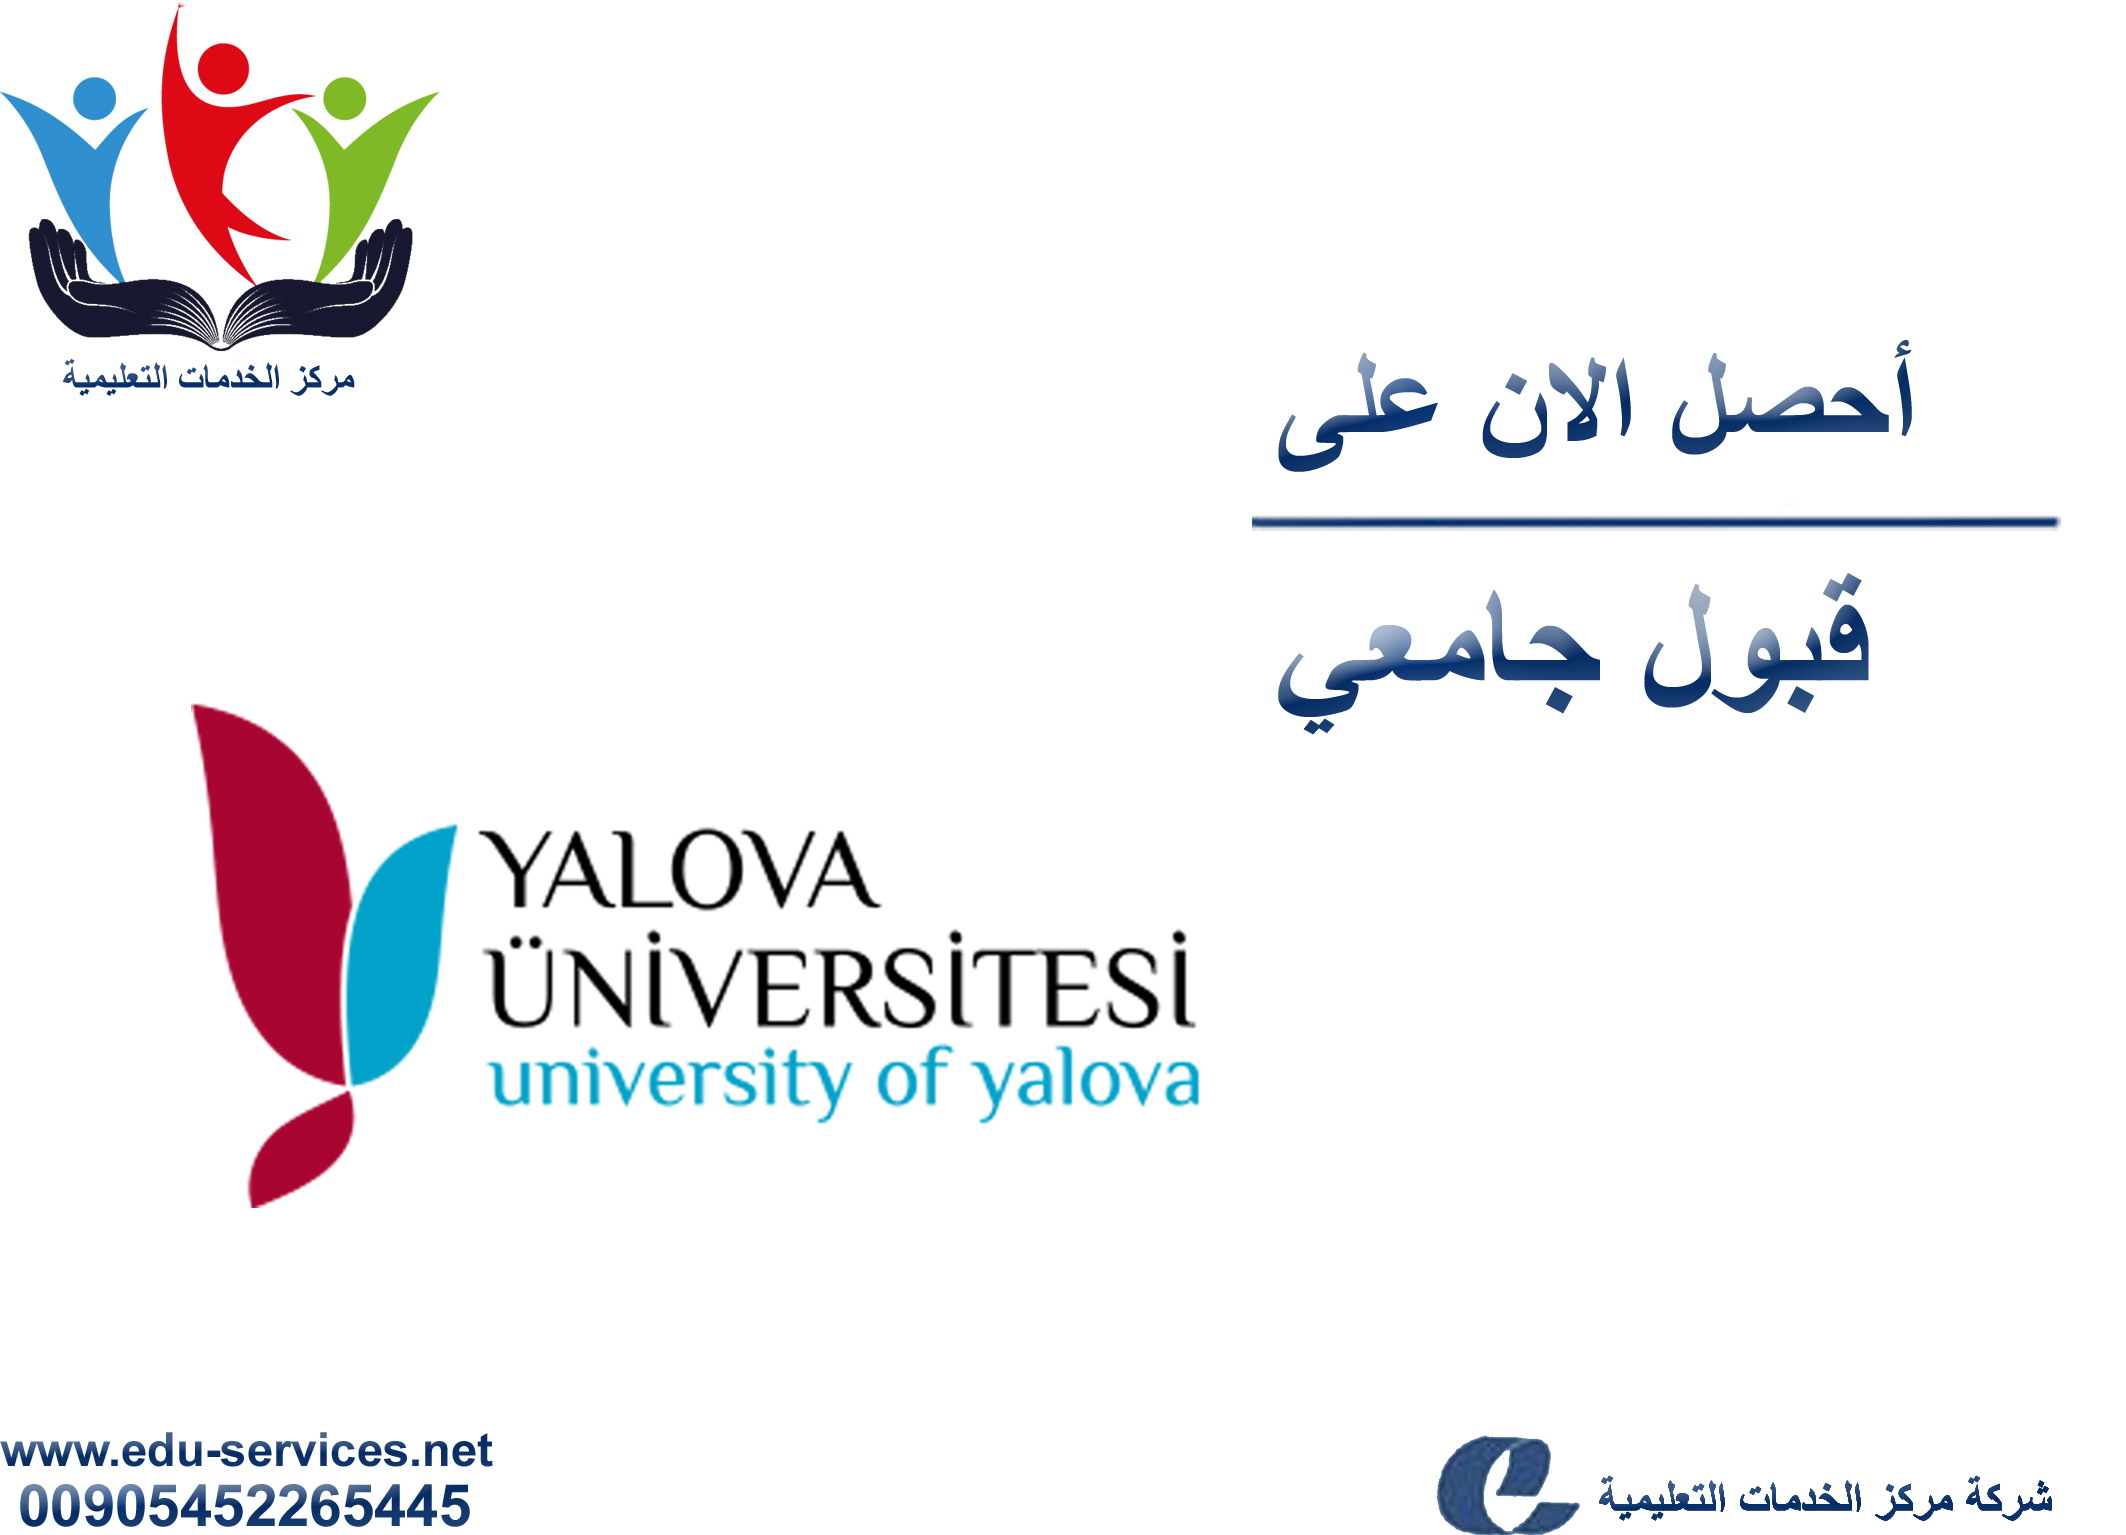 افتتاح التسجيل في جامعة يالوفا للعام 2019-2020